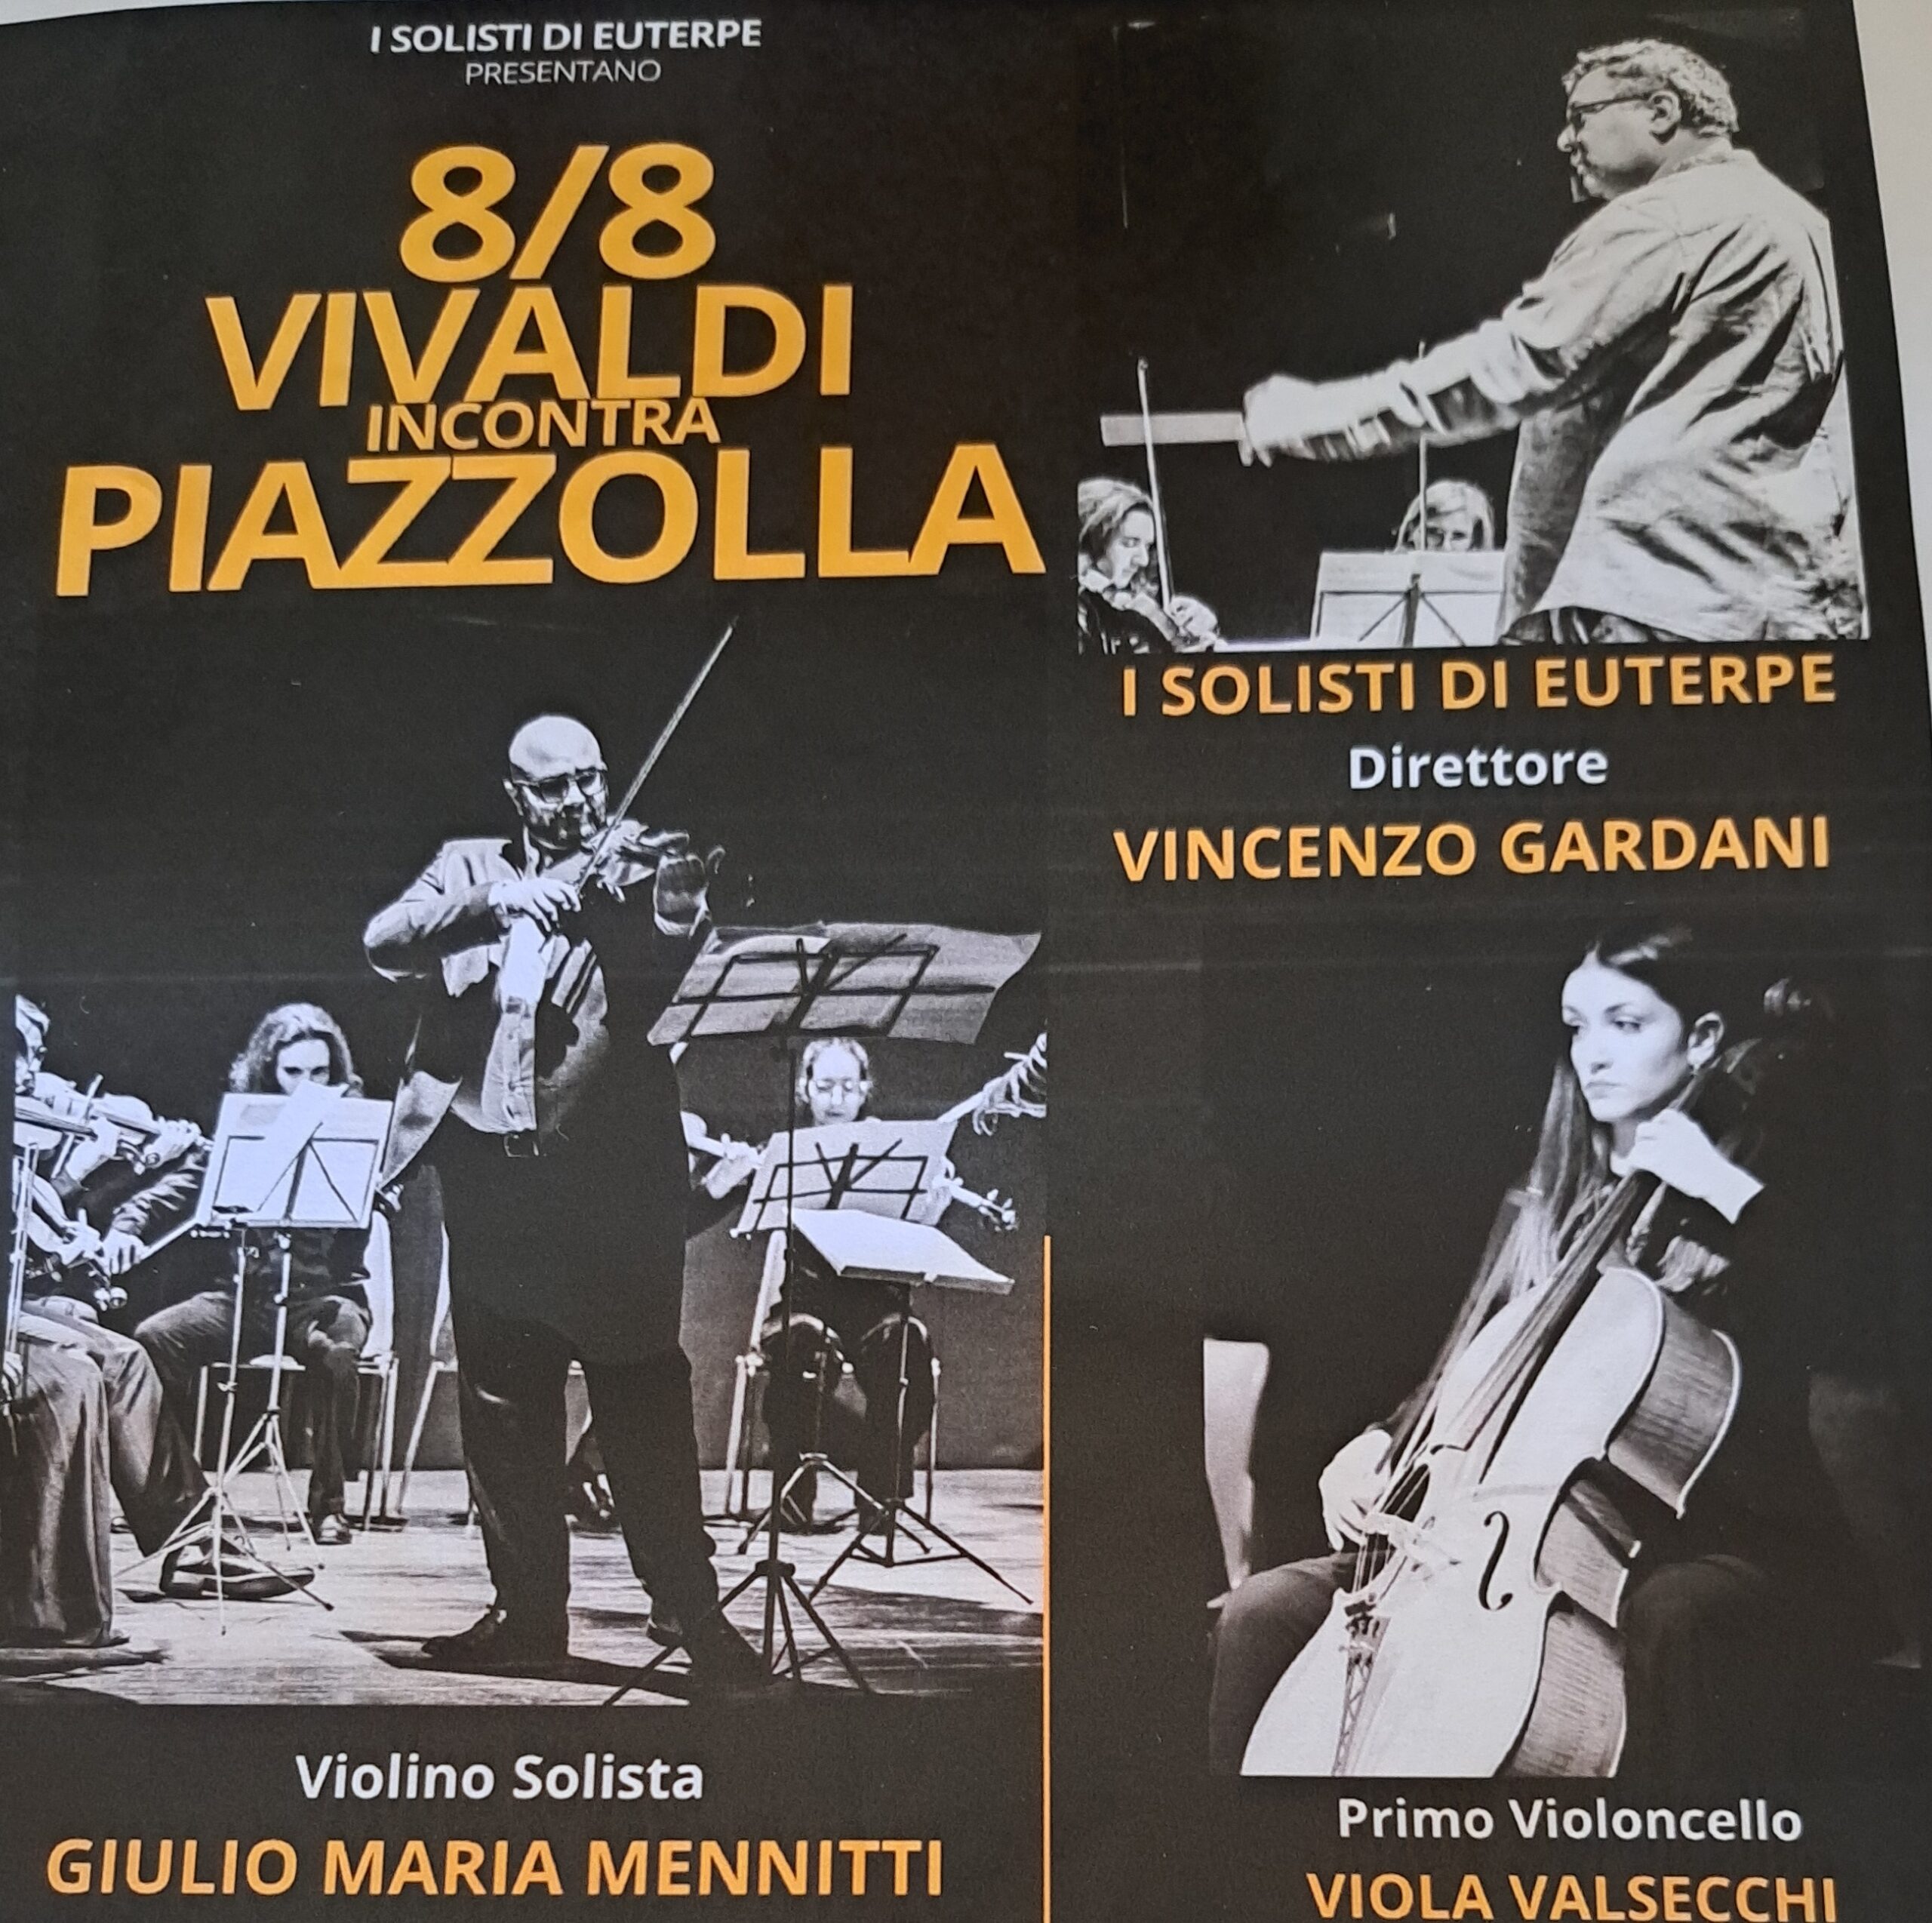 Concerto – Vivaldi incontra Piazzolla